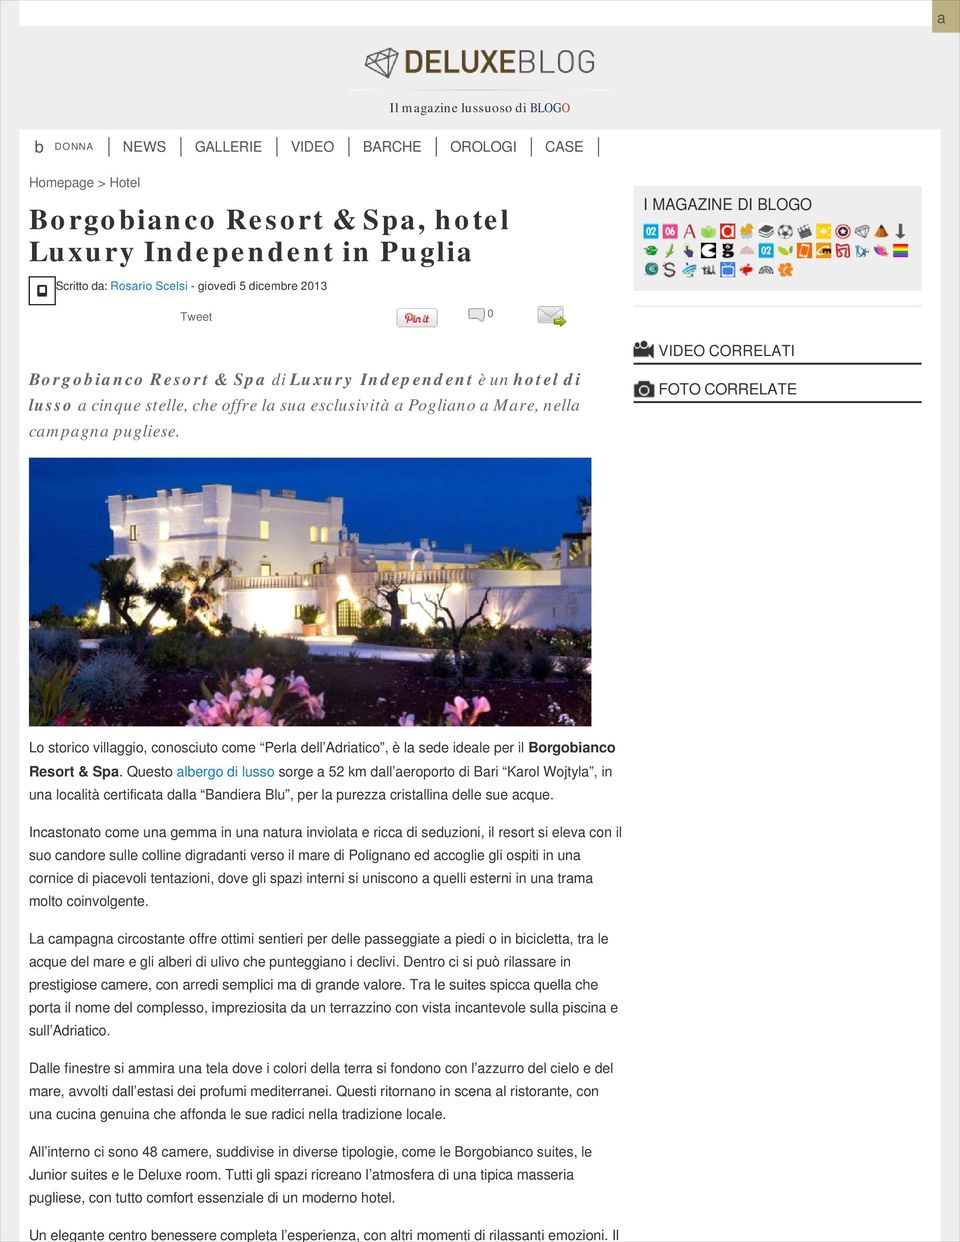 Rosario Scelsi - giovedì 5 dicembre 2013 Tweet 0 Borgobianco Resort & Spa di Luxury Independent è un hotel di lusso a cinque stelle, che offre la sua esclusività a Pogliano a Mare, nella campagna